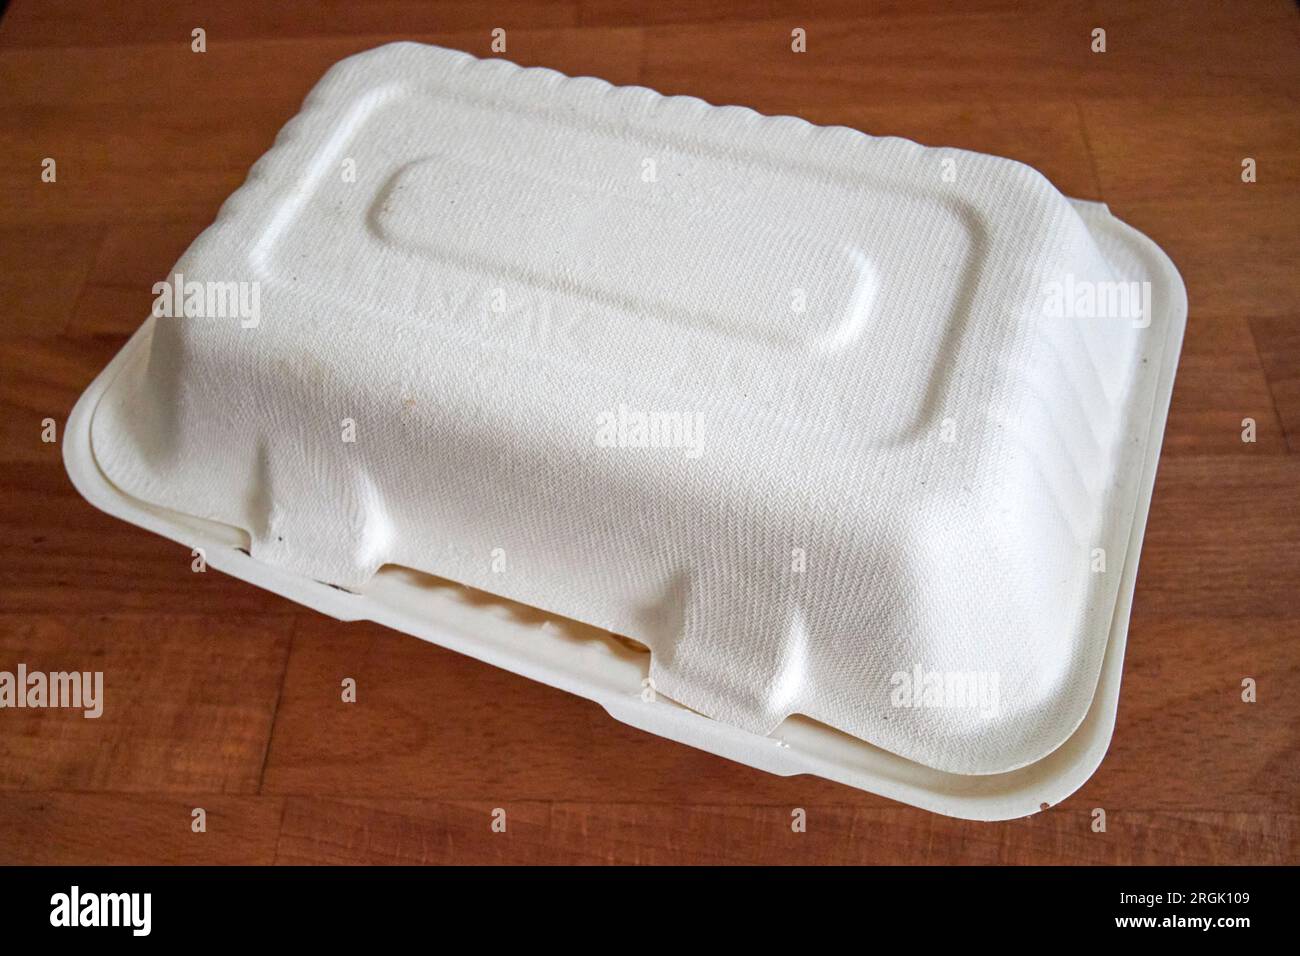 nuovo imballaggio biodegradabile per alimenti uk Foto Stock